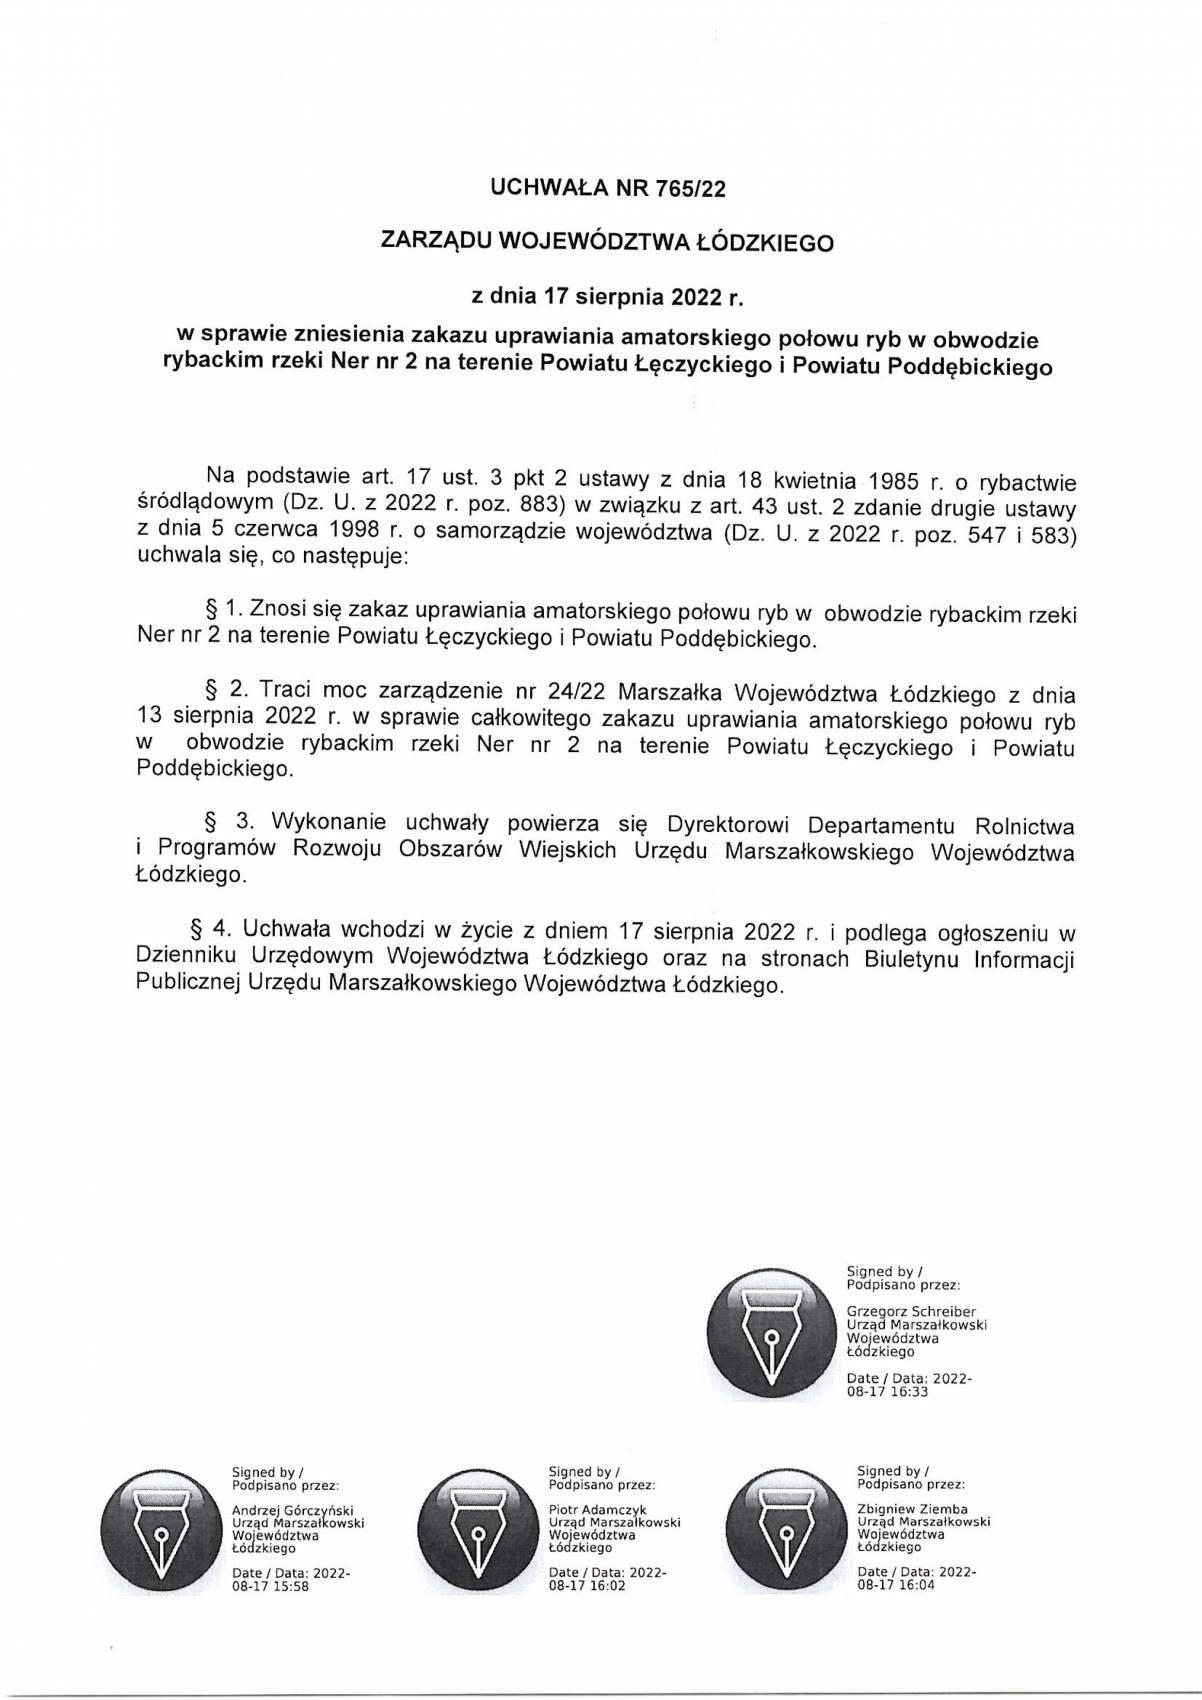 Uchwała Marszałka Województwa Łódzkiego dot. zniesienia zakazu połowu ryb w Nerze